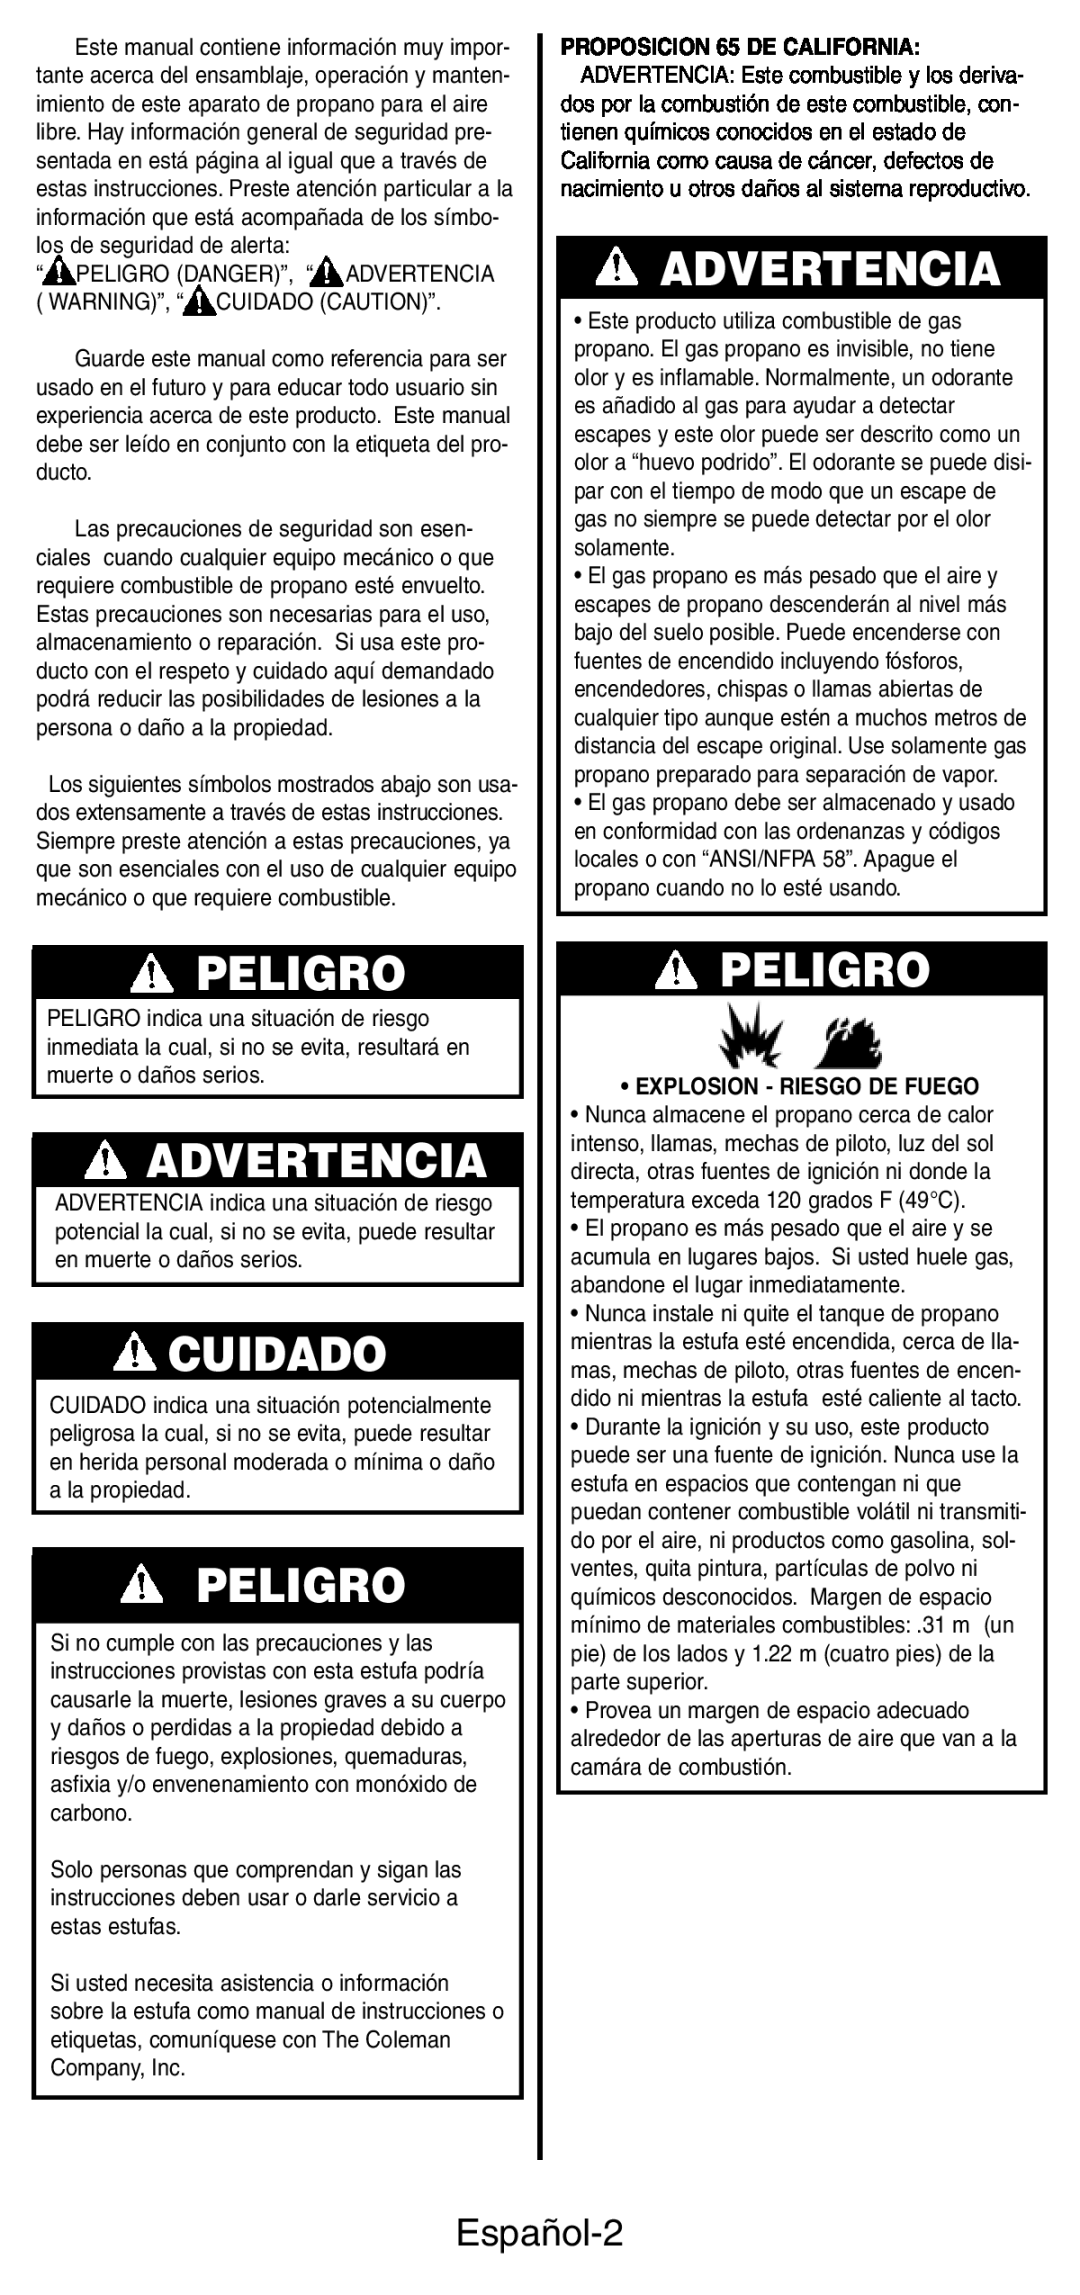 Coleman 5444 Series manual Peligro, Advertencia, Cuidado, Español-2, Explosion - Riesgo De Fuego 